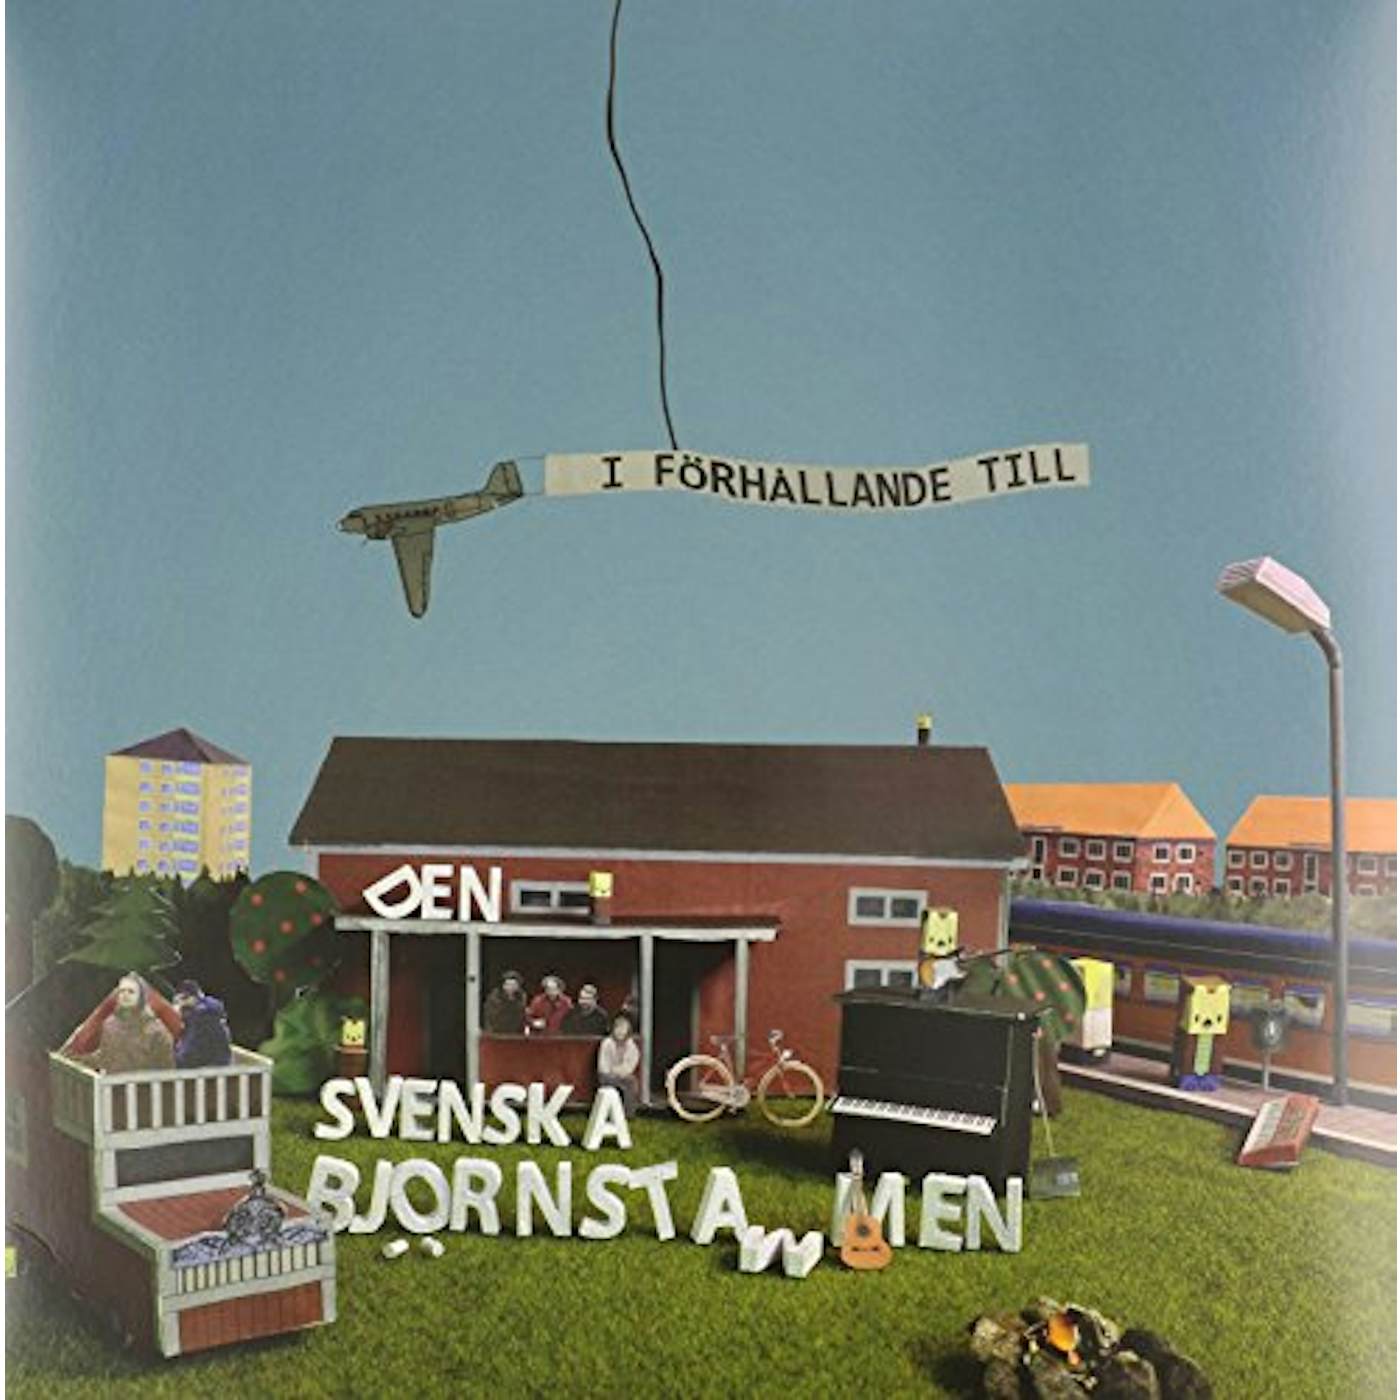 Den svenska björnstammen I FORHALLANDE TILL Vinyl Record